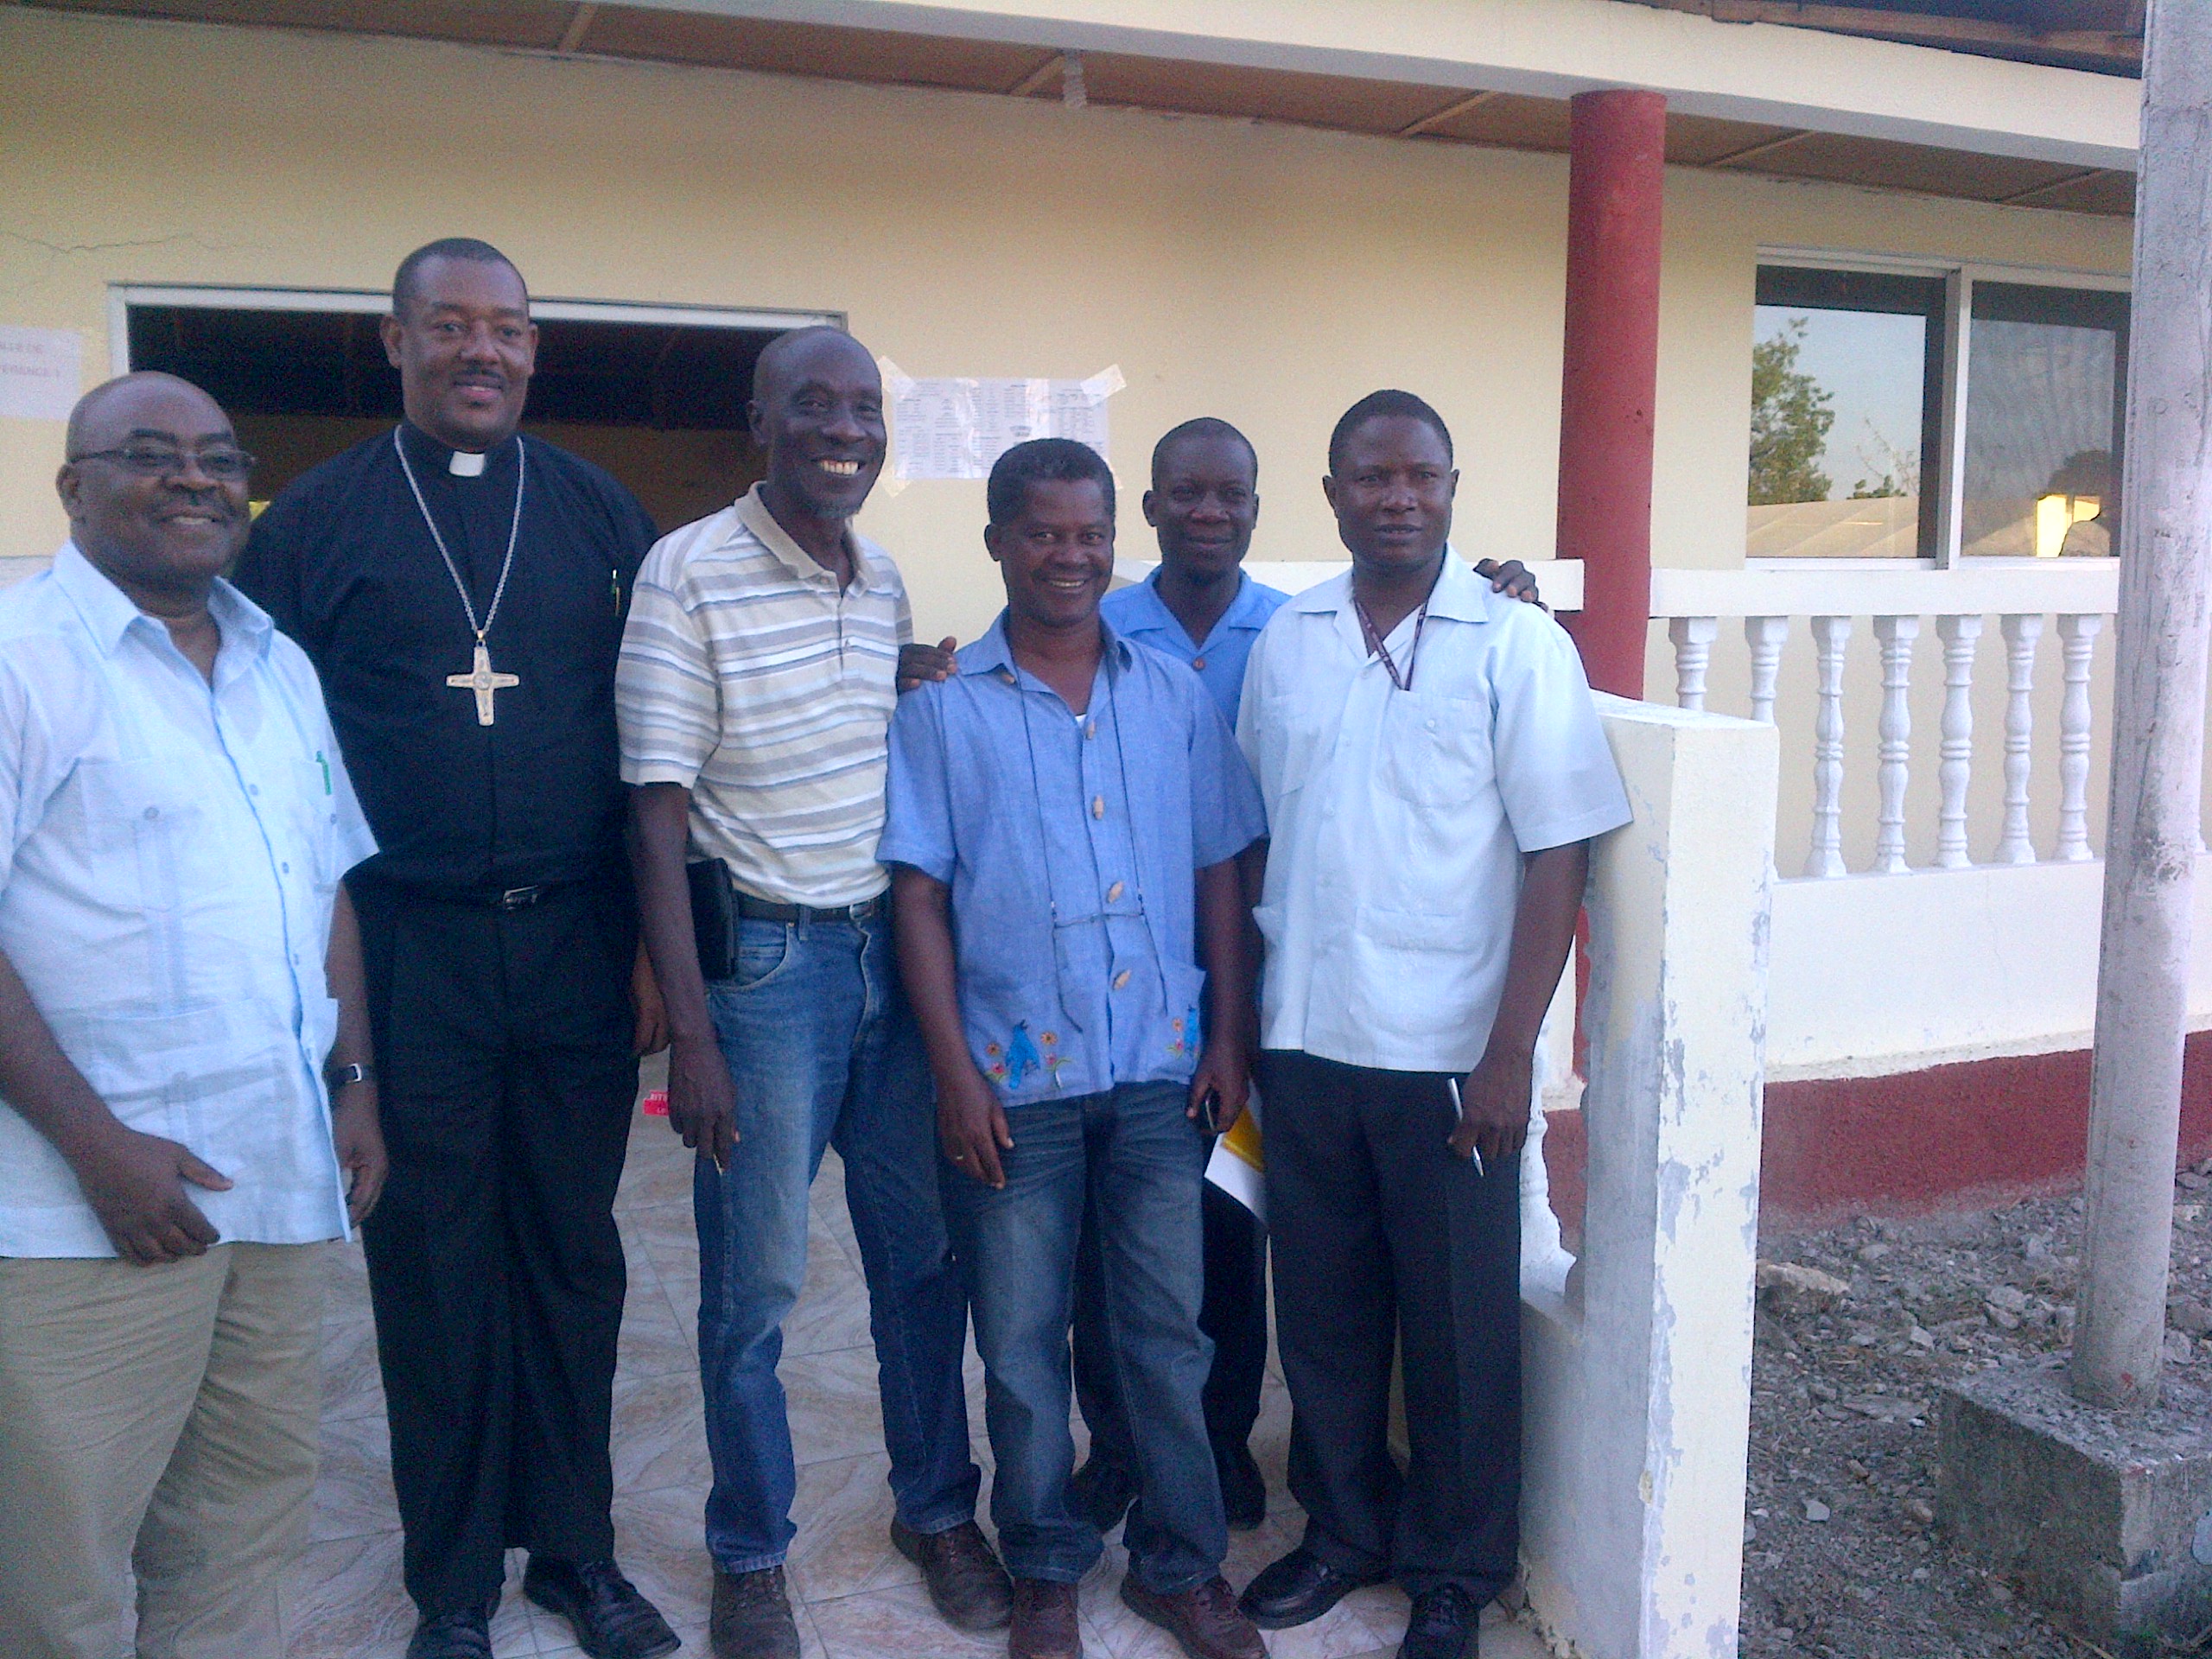 PICO Staff Meet With Haiti Leaders